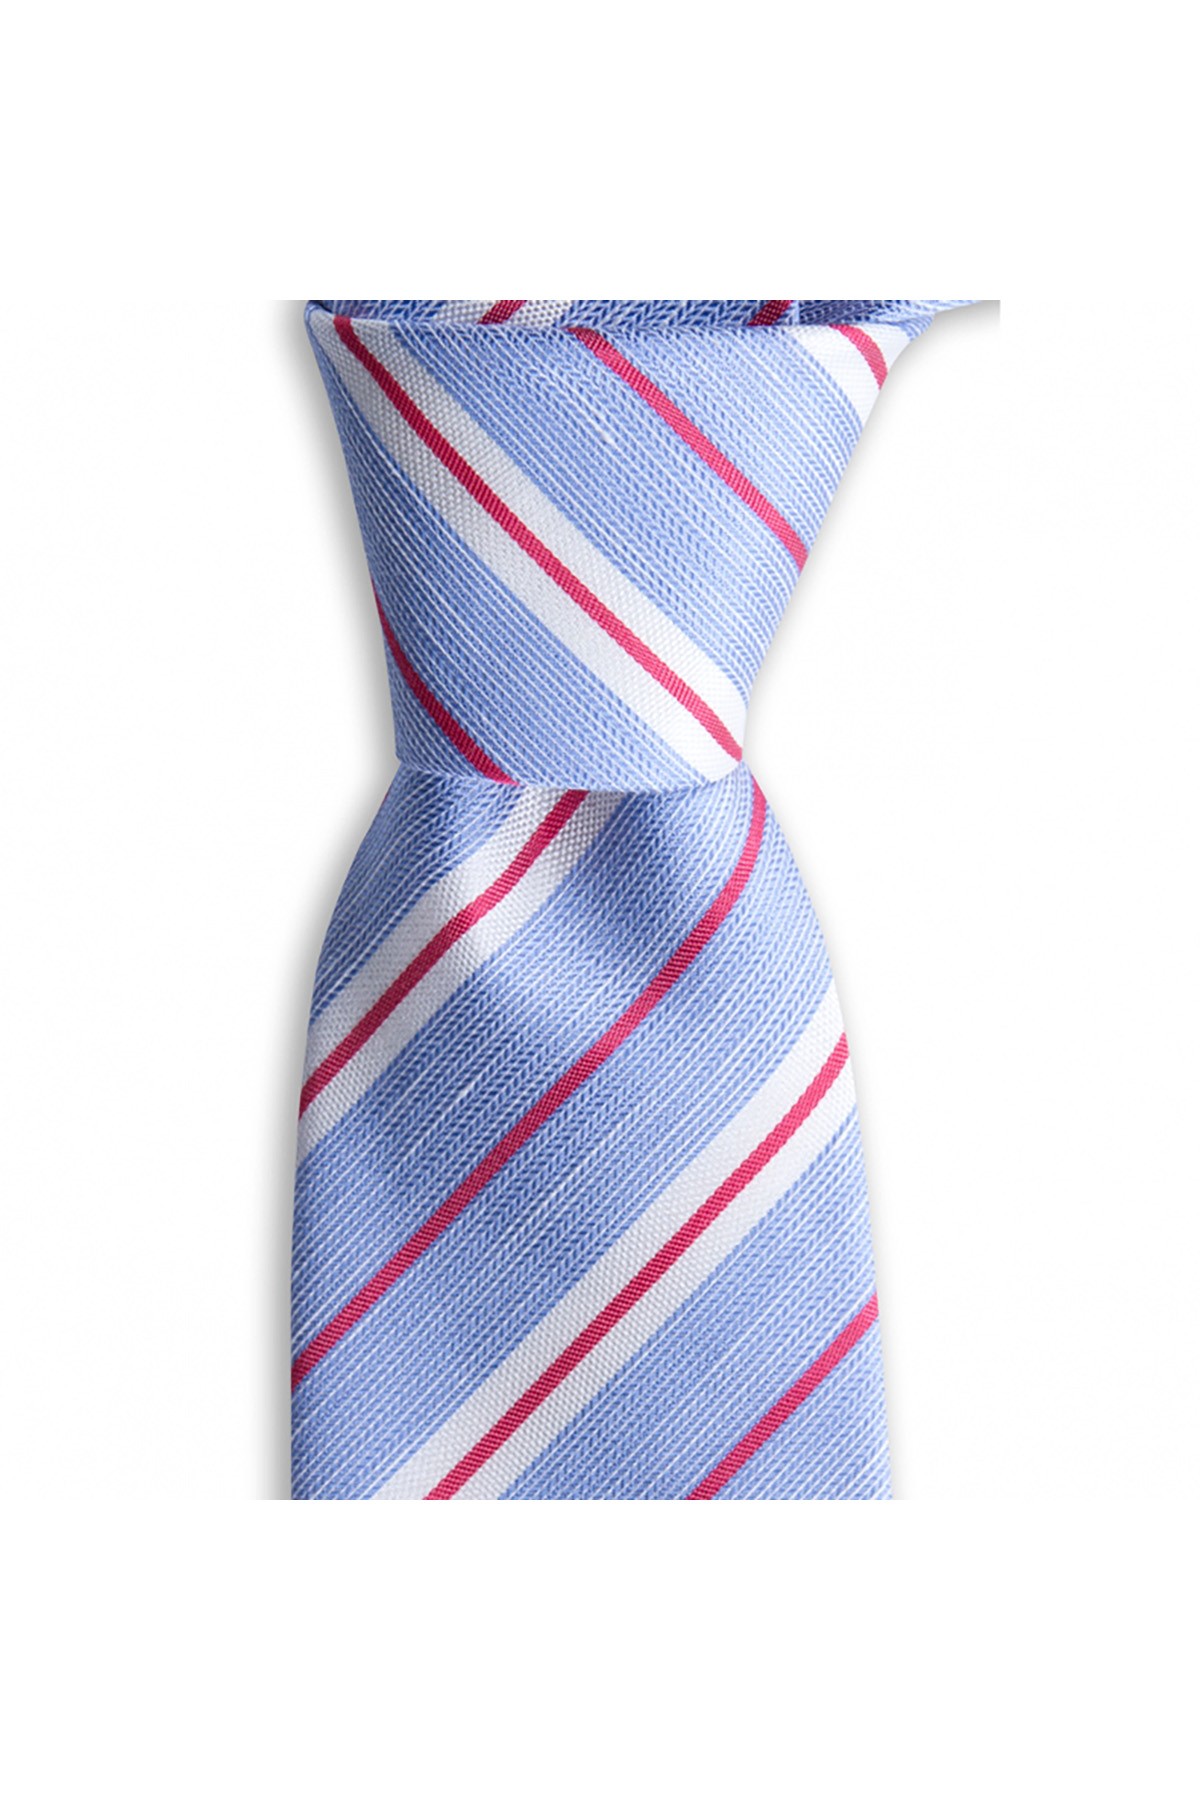 Klasik çizgili 8 cm genişliğinde keten ve ipek karışımlı kravat - Mavi